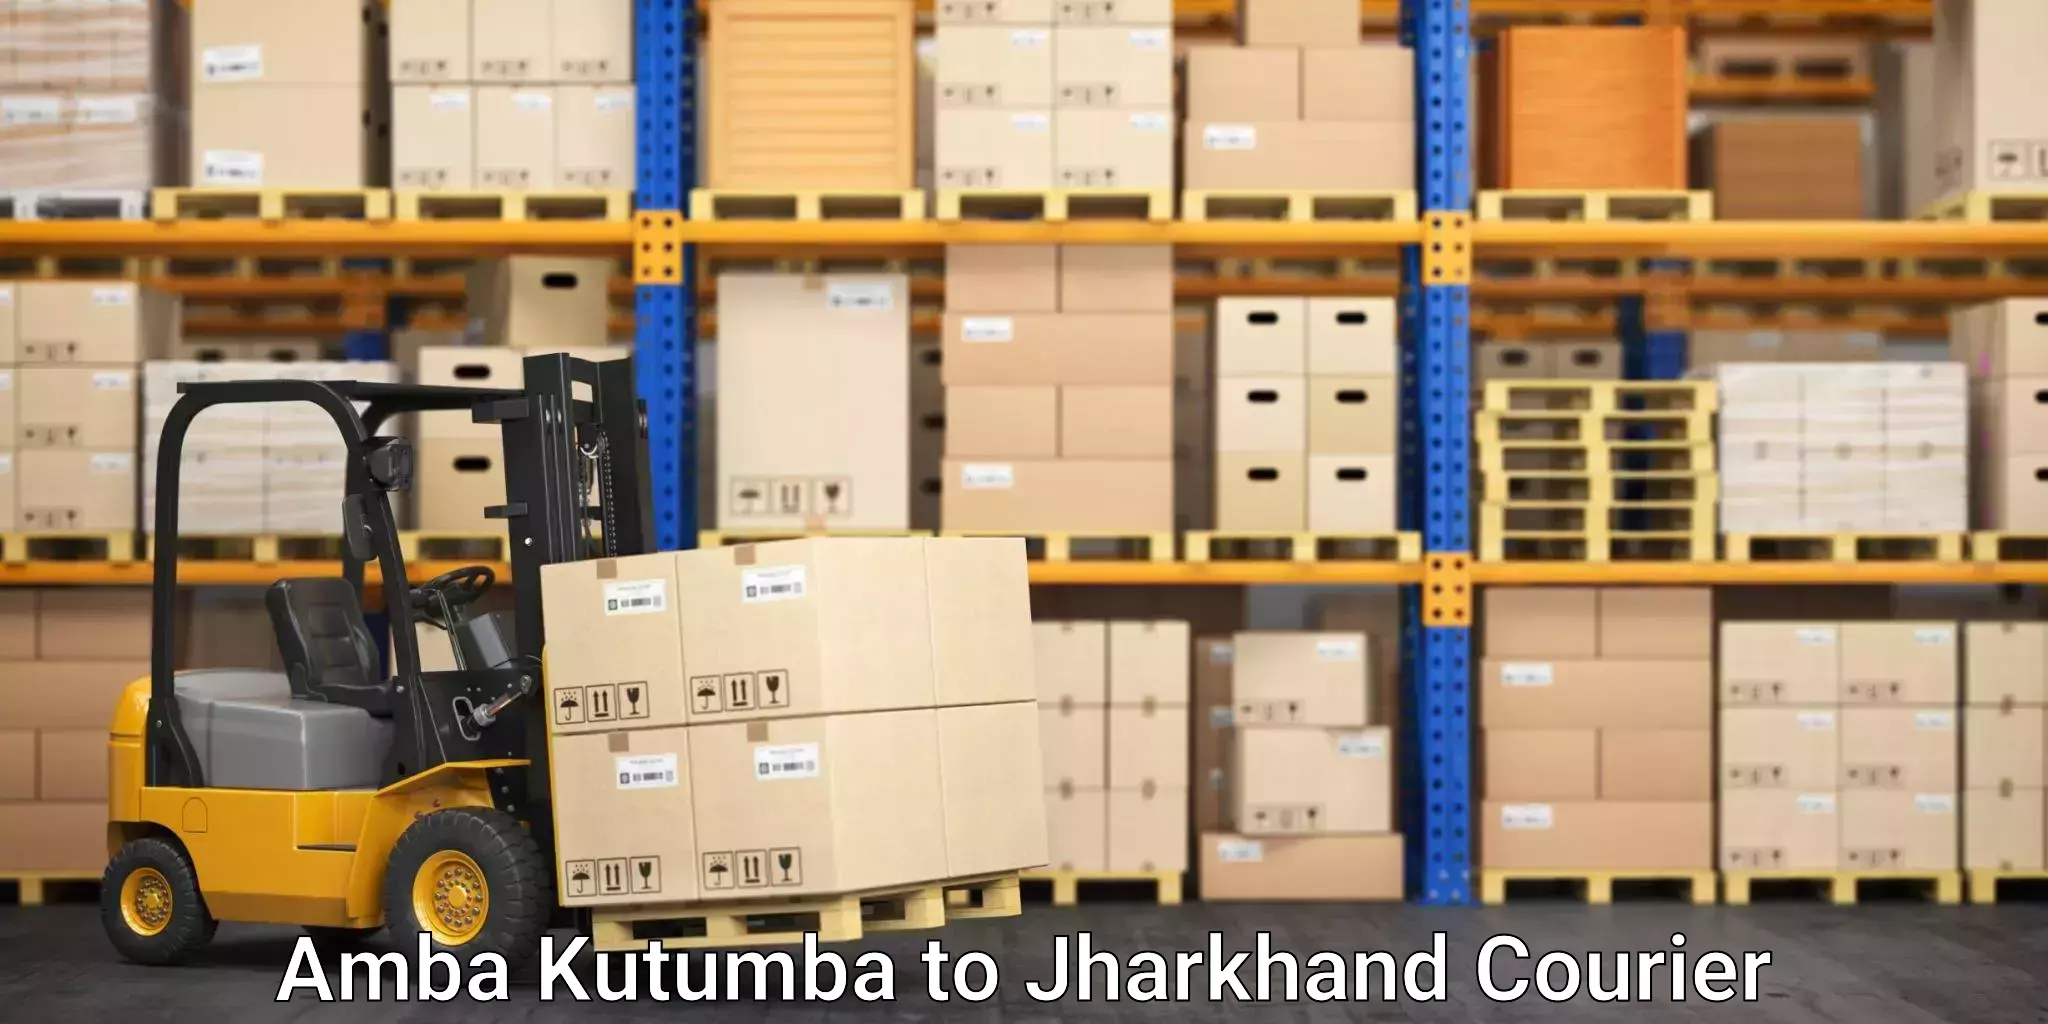 Furniture transport experts Amba Kutumba to Jharkhand